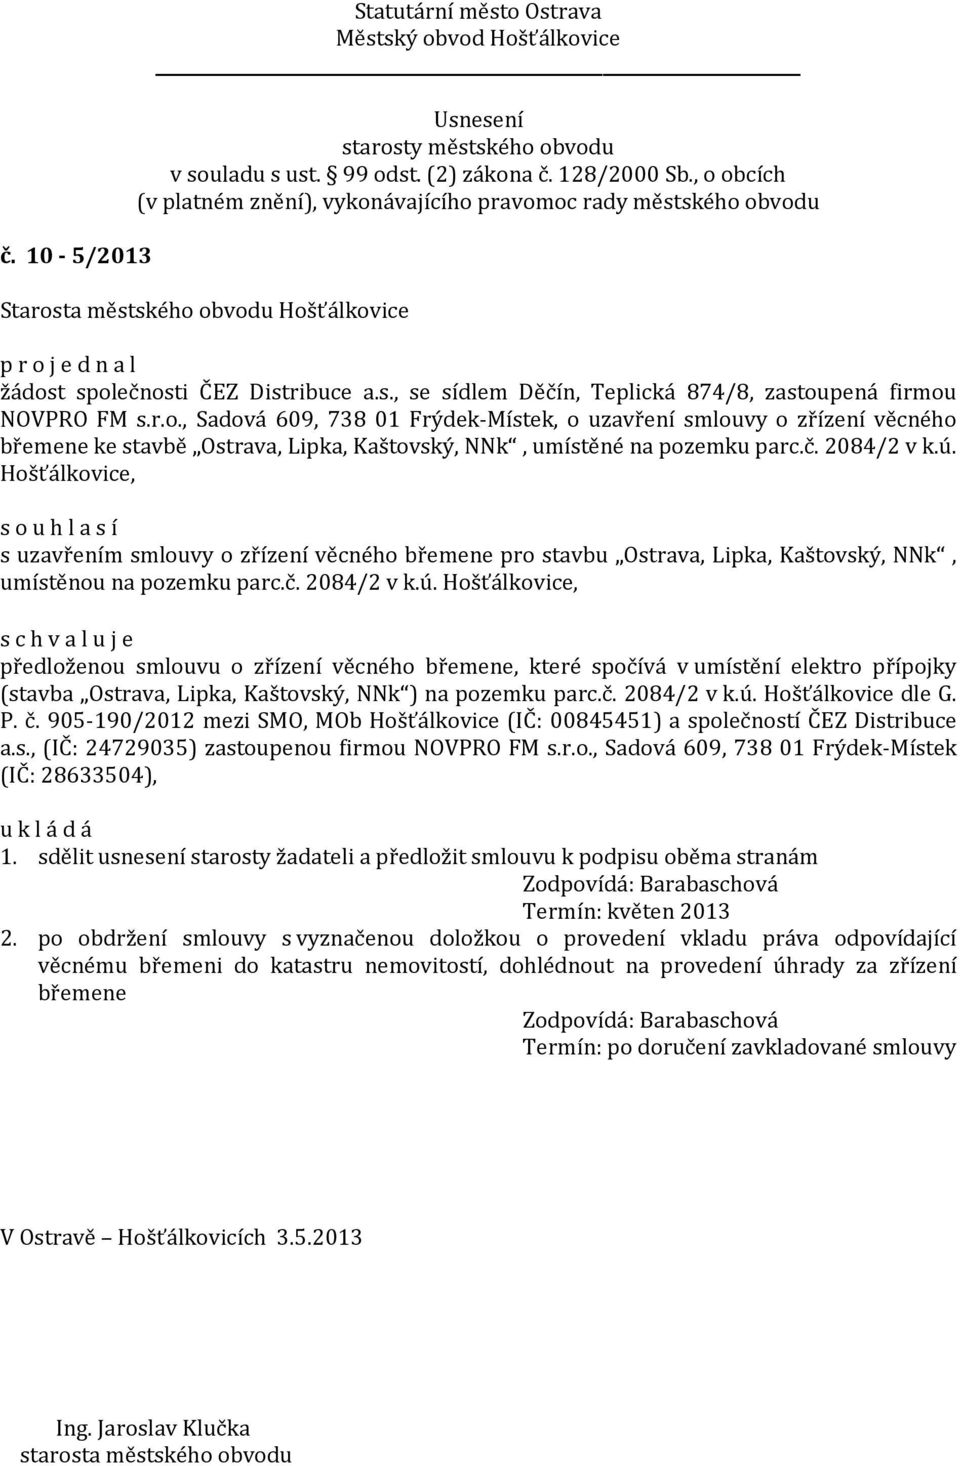 č. 2084/2 v k.ú. Hošťálkovice dle G. P. č. 905-190/2012 mezi SMO, MOb Hošťálkovice (IČ: 00845451) a společností ČEZ Distribuce a.s., (IČ: 24729035) zastoupenou firmou NOVPRO FM s.r.o., Sadová 609, 738 01 Frýdek-Místek (IČ: 28633504), 1.